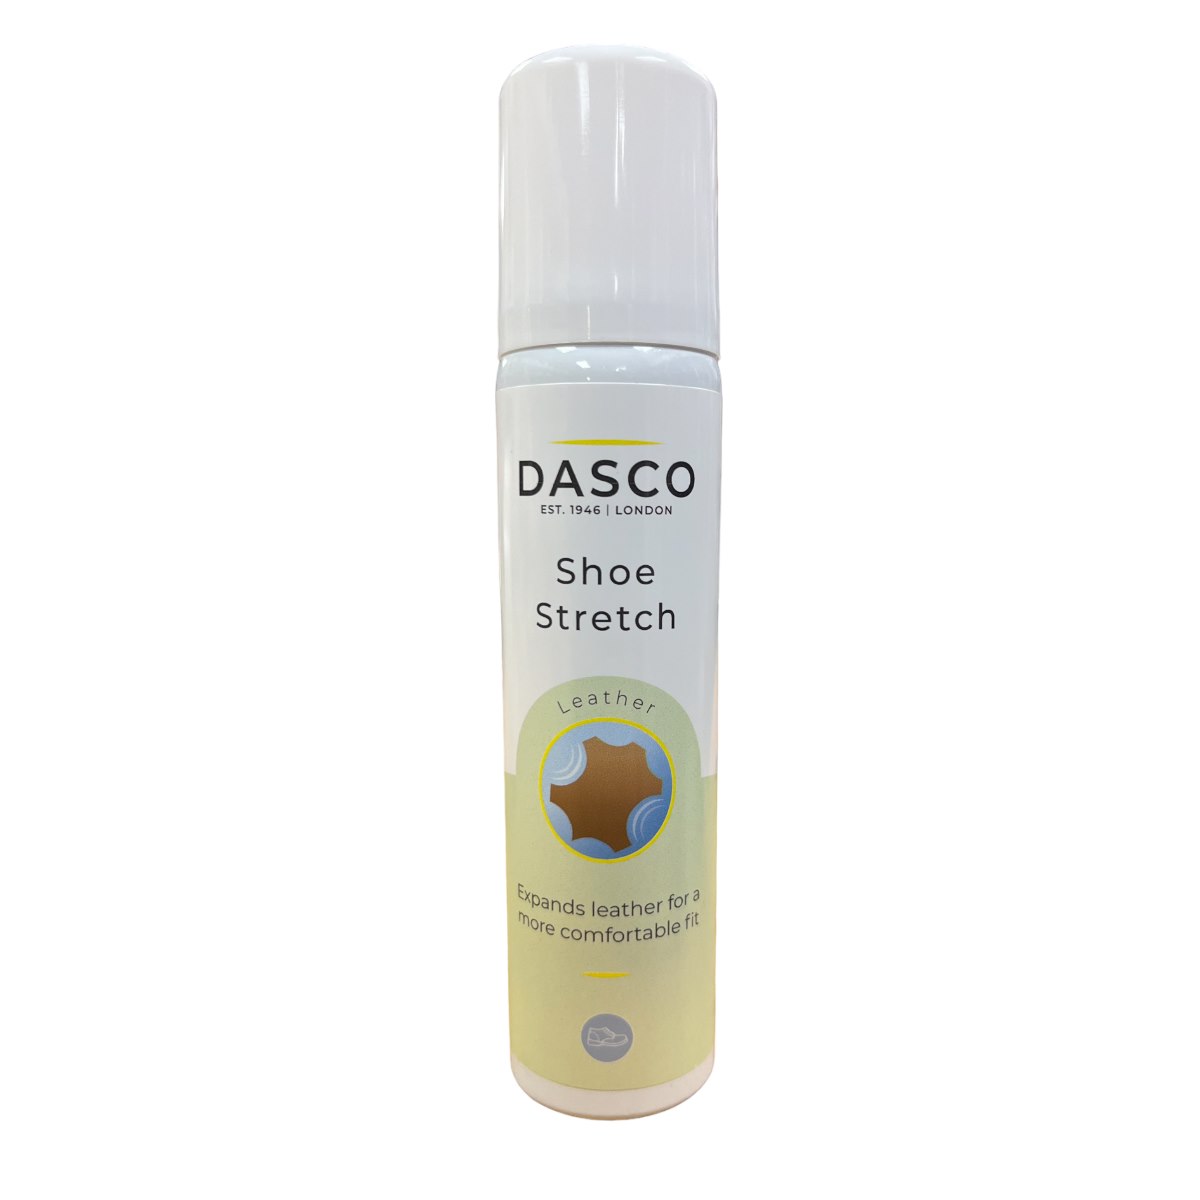 Dasco Leather Shoe Stretch Spray 75ml